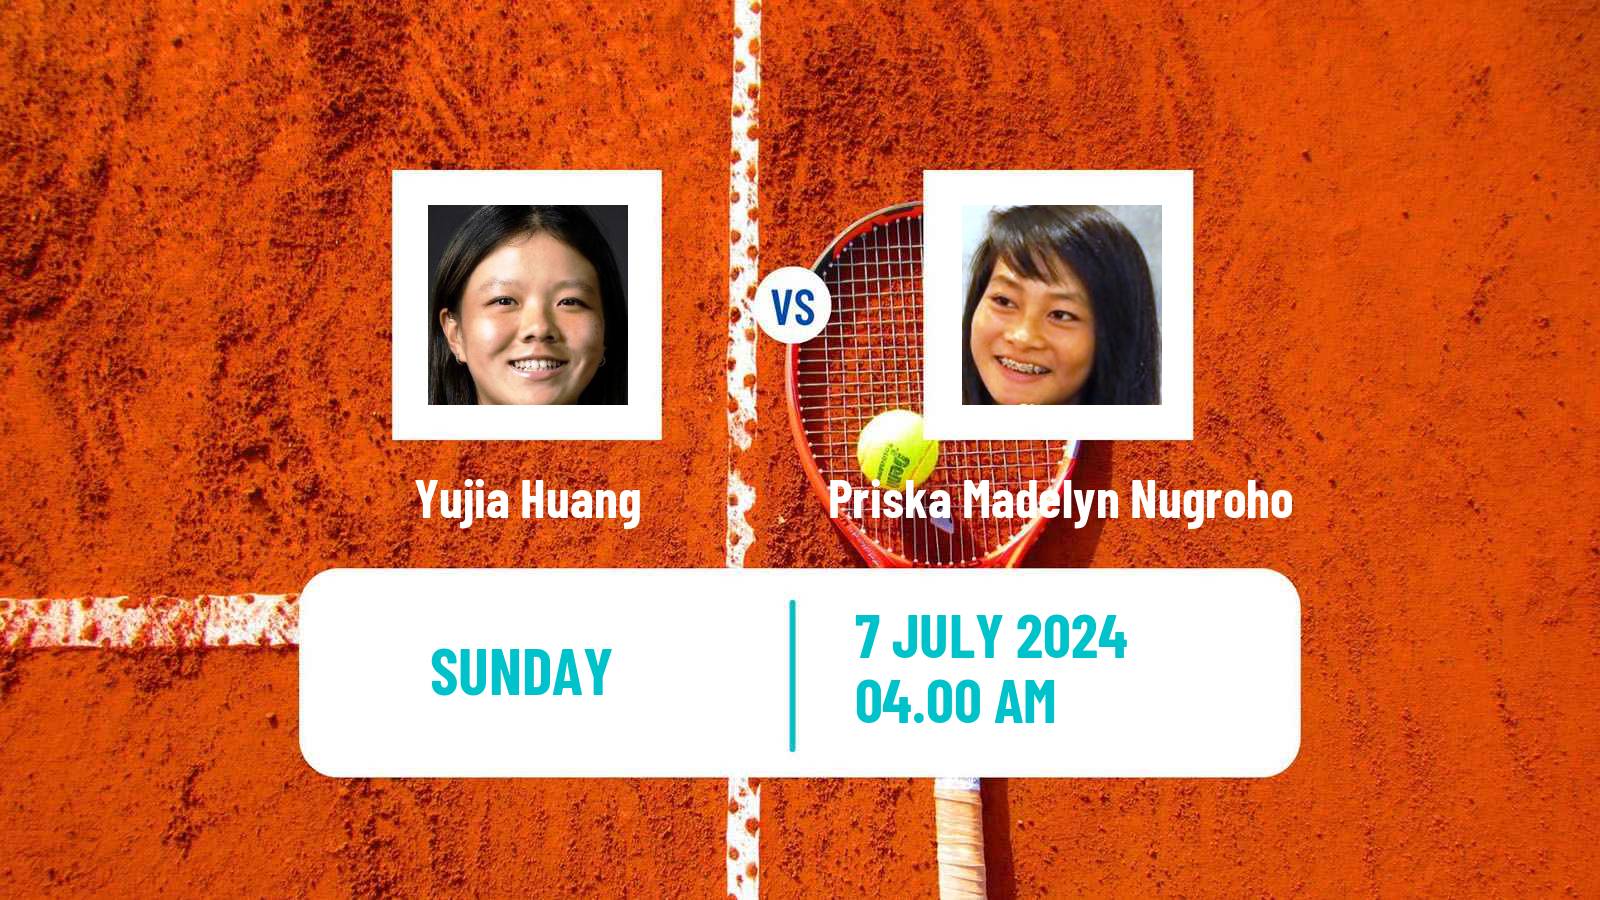 Tennis ITF W15 Tianjin 2 Women Yujia Huang - Priska Madelyn Nugroho